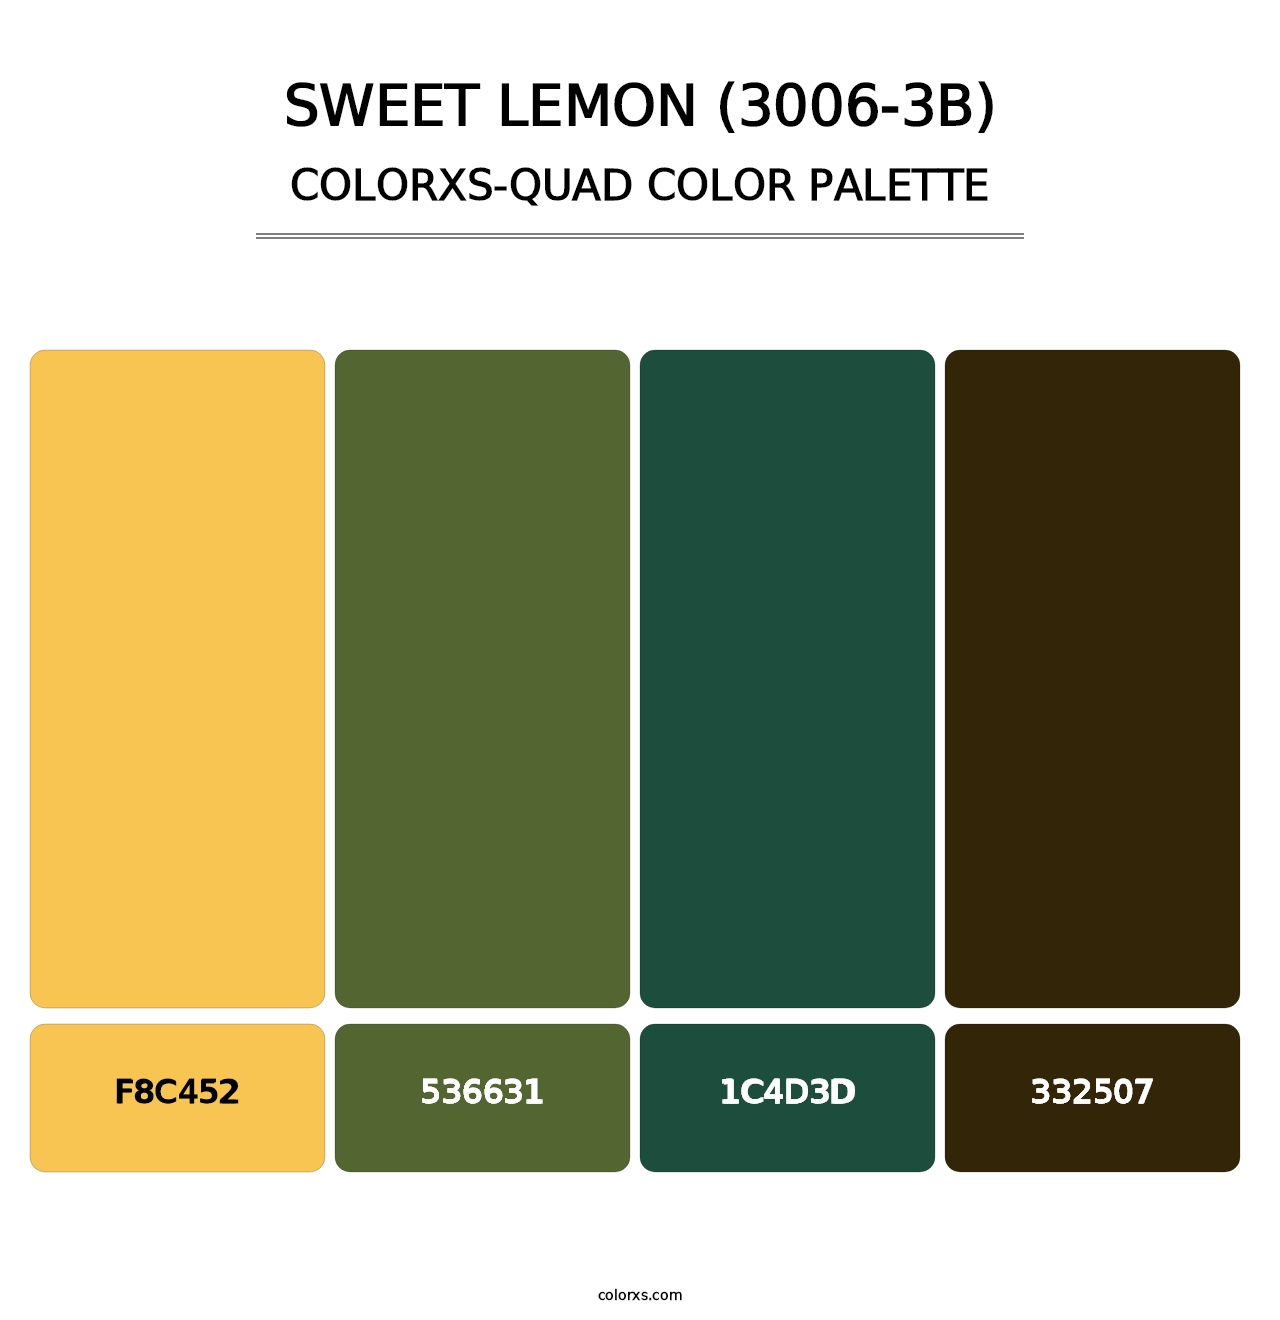 Sweet Lemon (3006-3B) - Colorxs Quad Palette